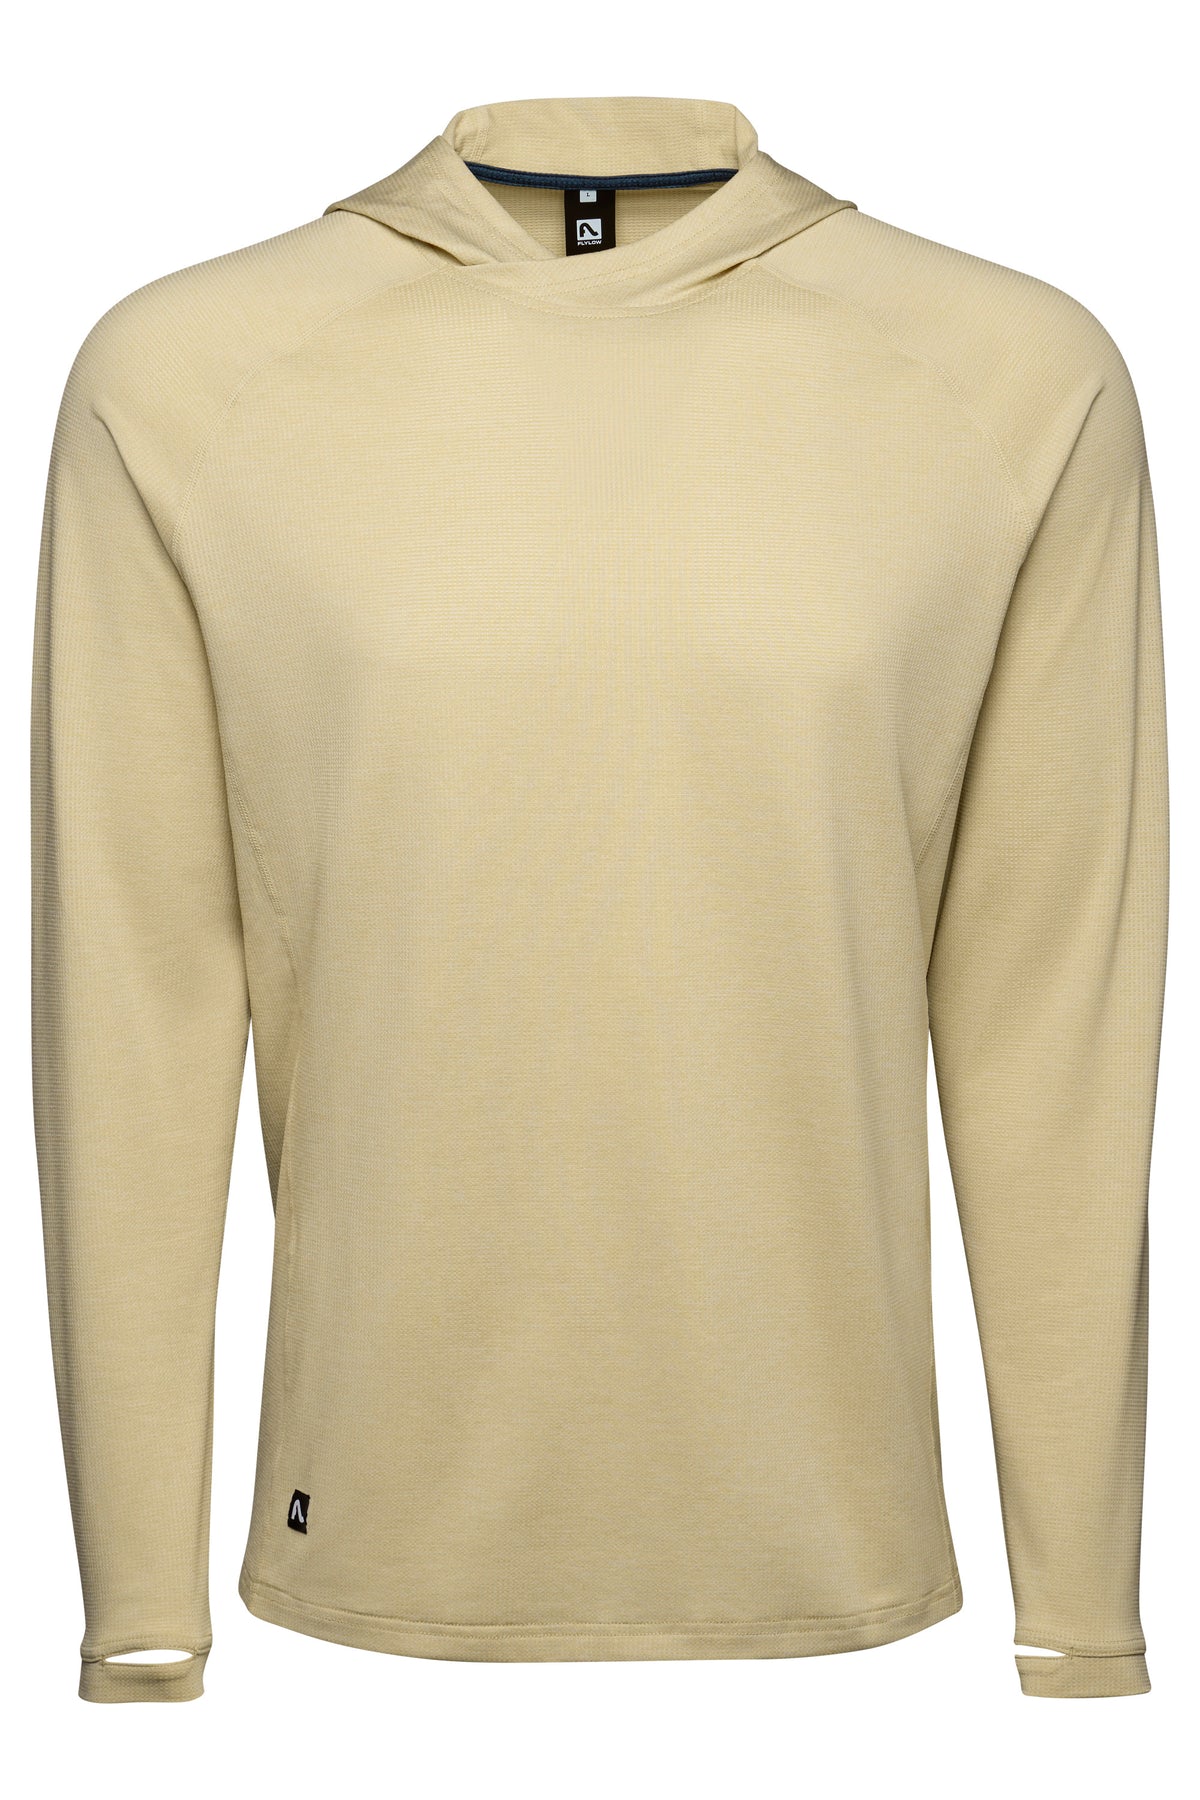 2022 Spring Autumn New Men's Short Sleeve Knitwear T Shirt High